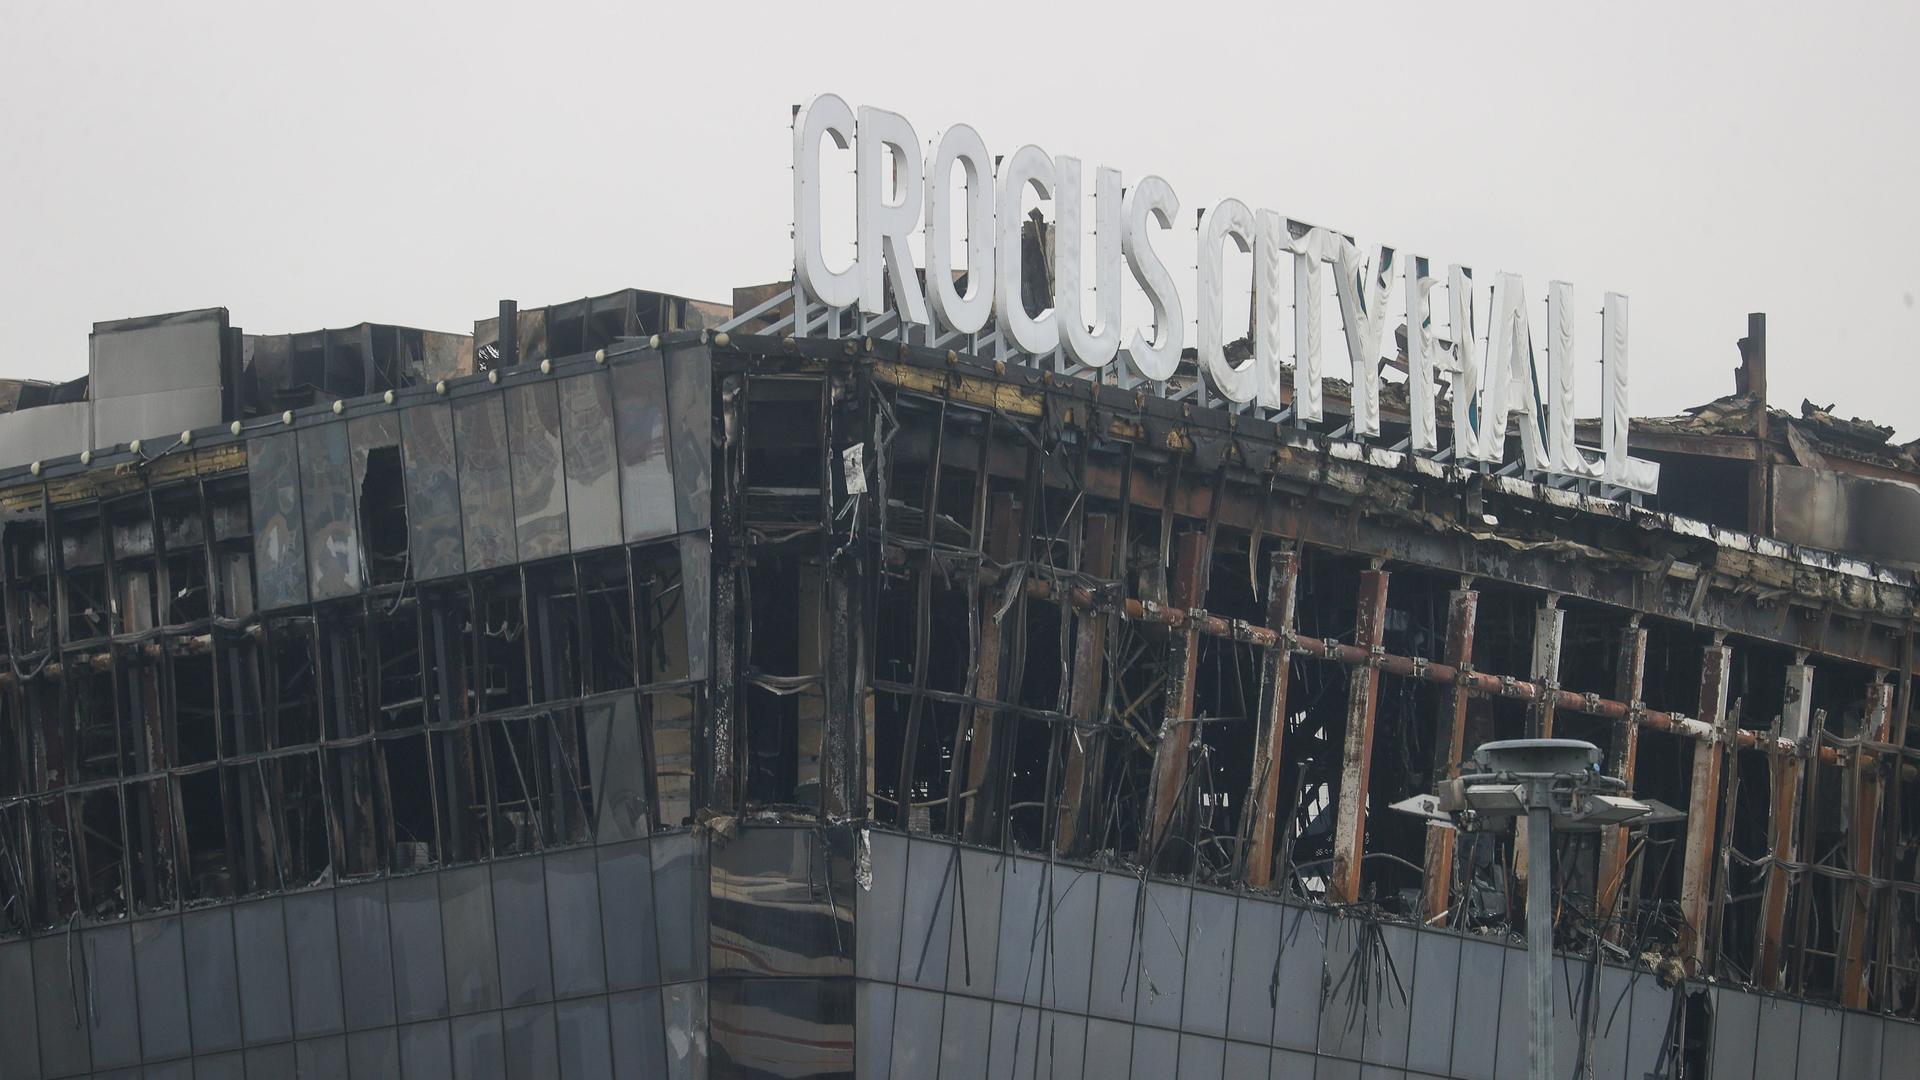 Blick auf das ausgebrannte Gebäude. Auf dem Dach prangen noch die Buchstaben "Crocus City Hall".